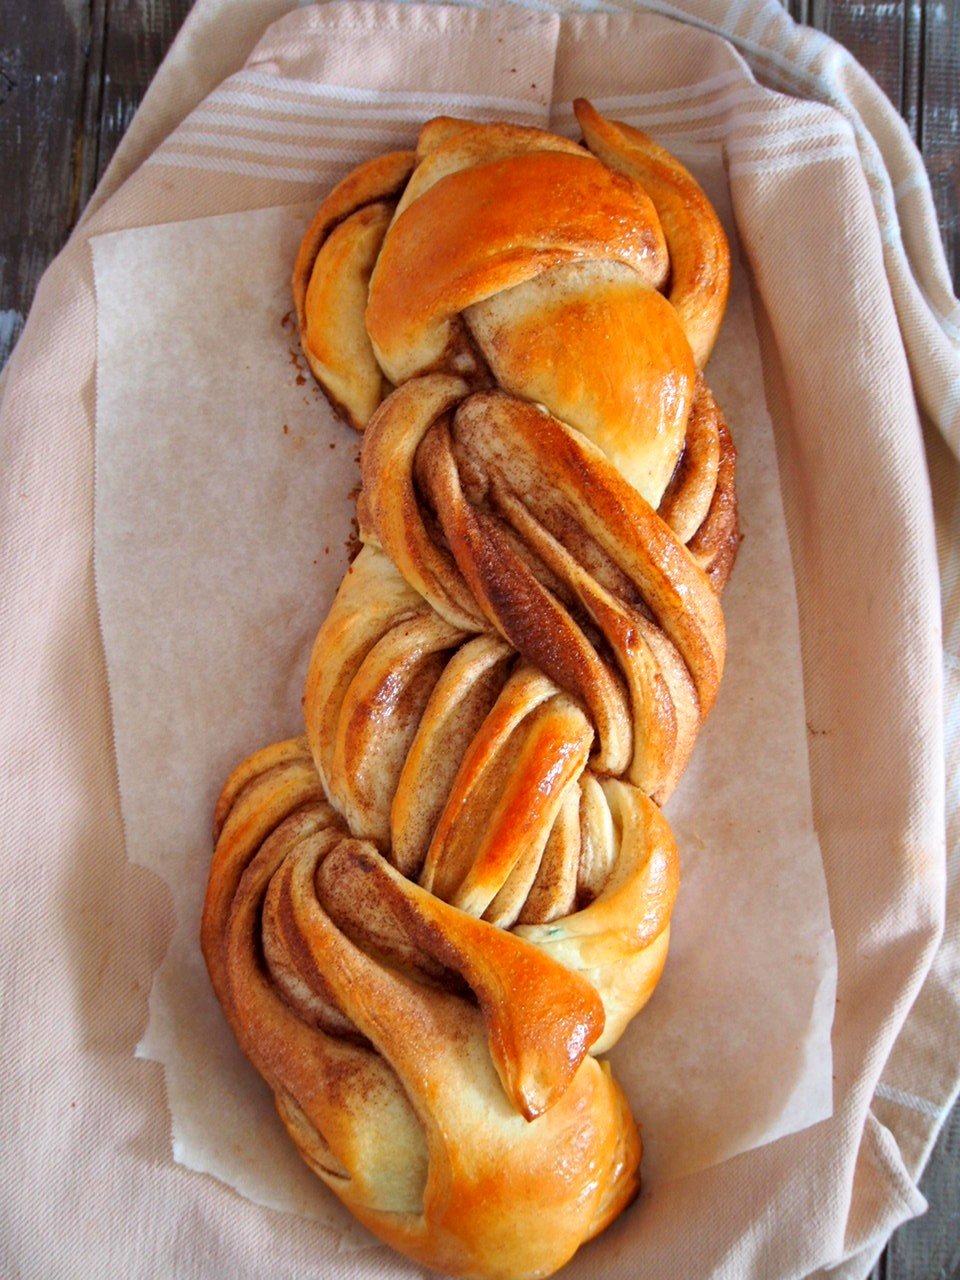 Freshly baked Cinnamon bread Loaf.